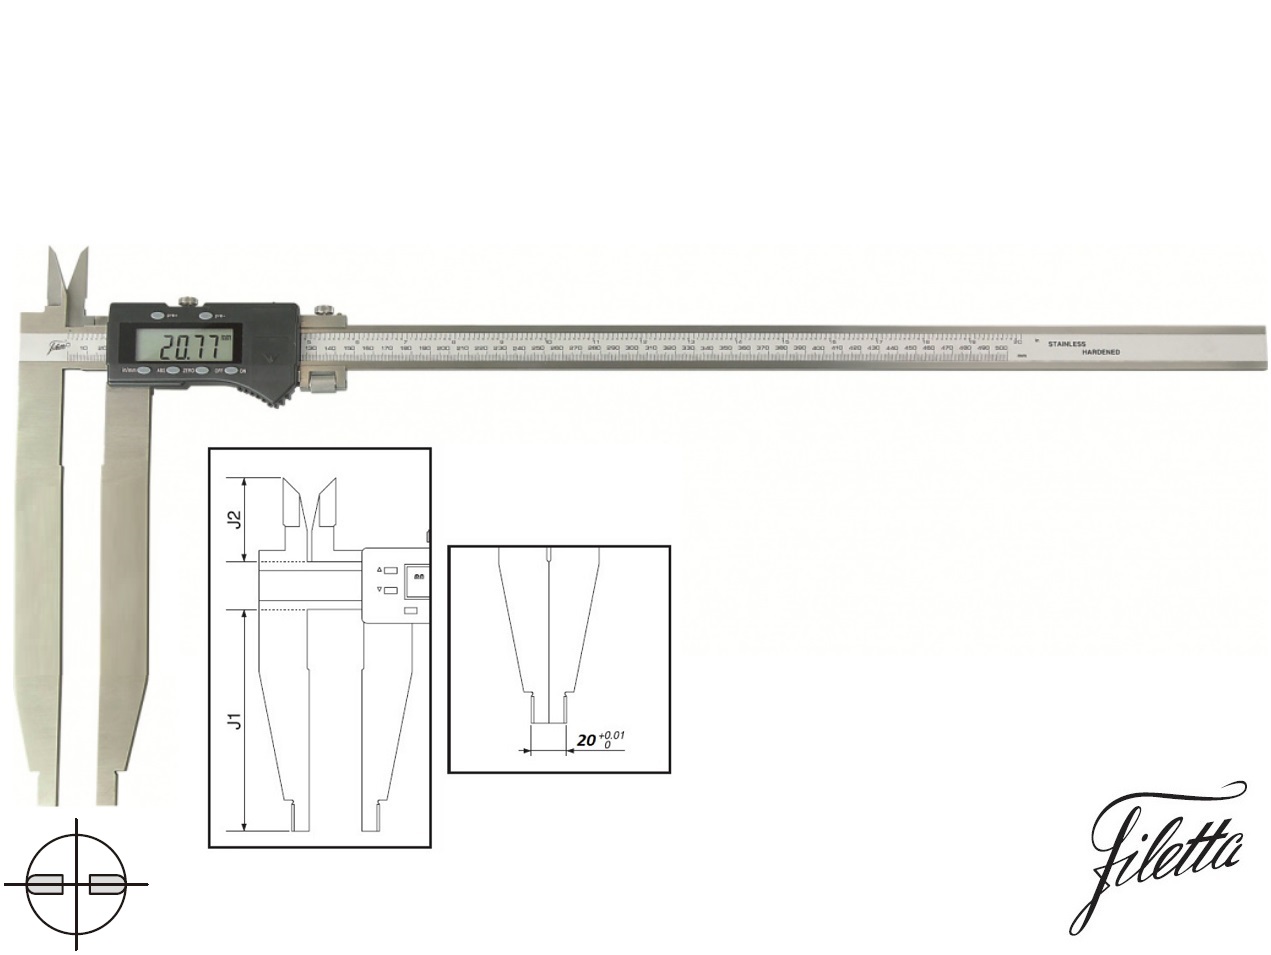 Digitální posuvné měřítko Filetta 0-500/200 mm s měřicími nožíky pro vnitřní měření